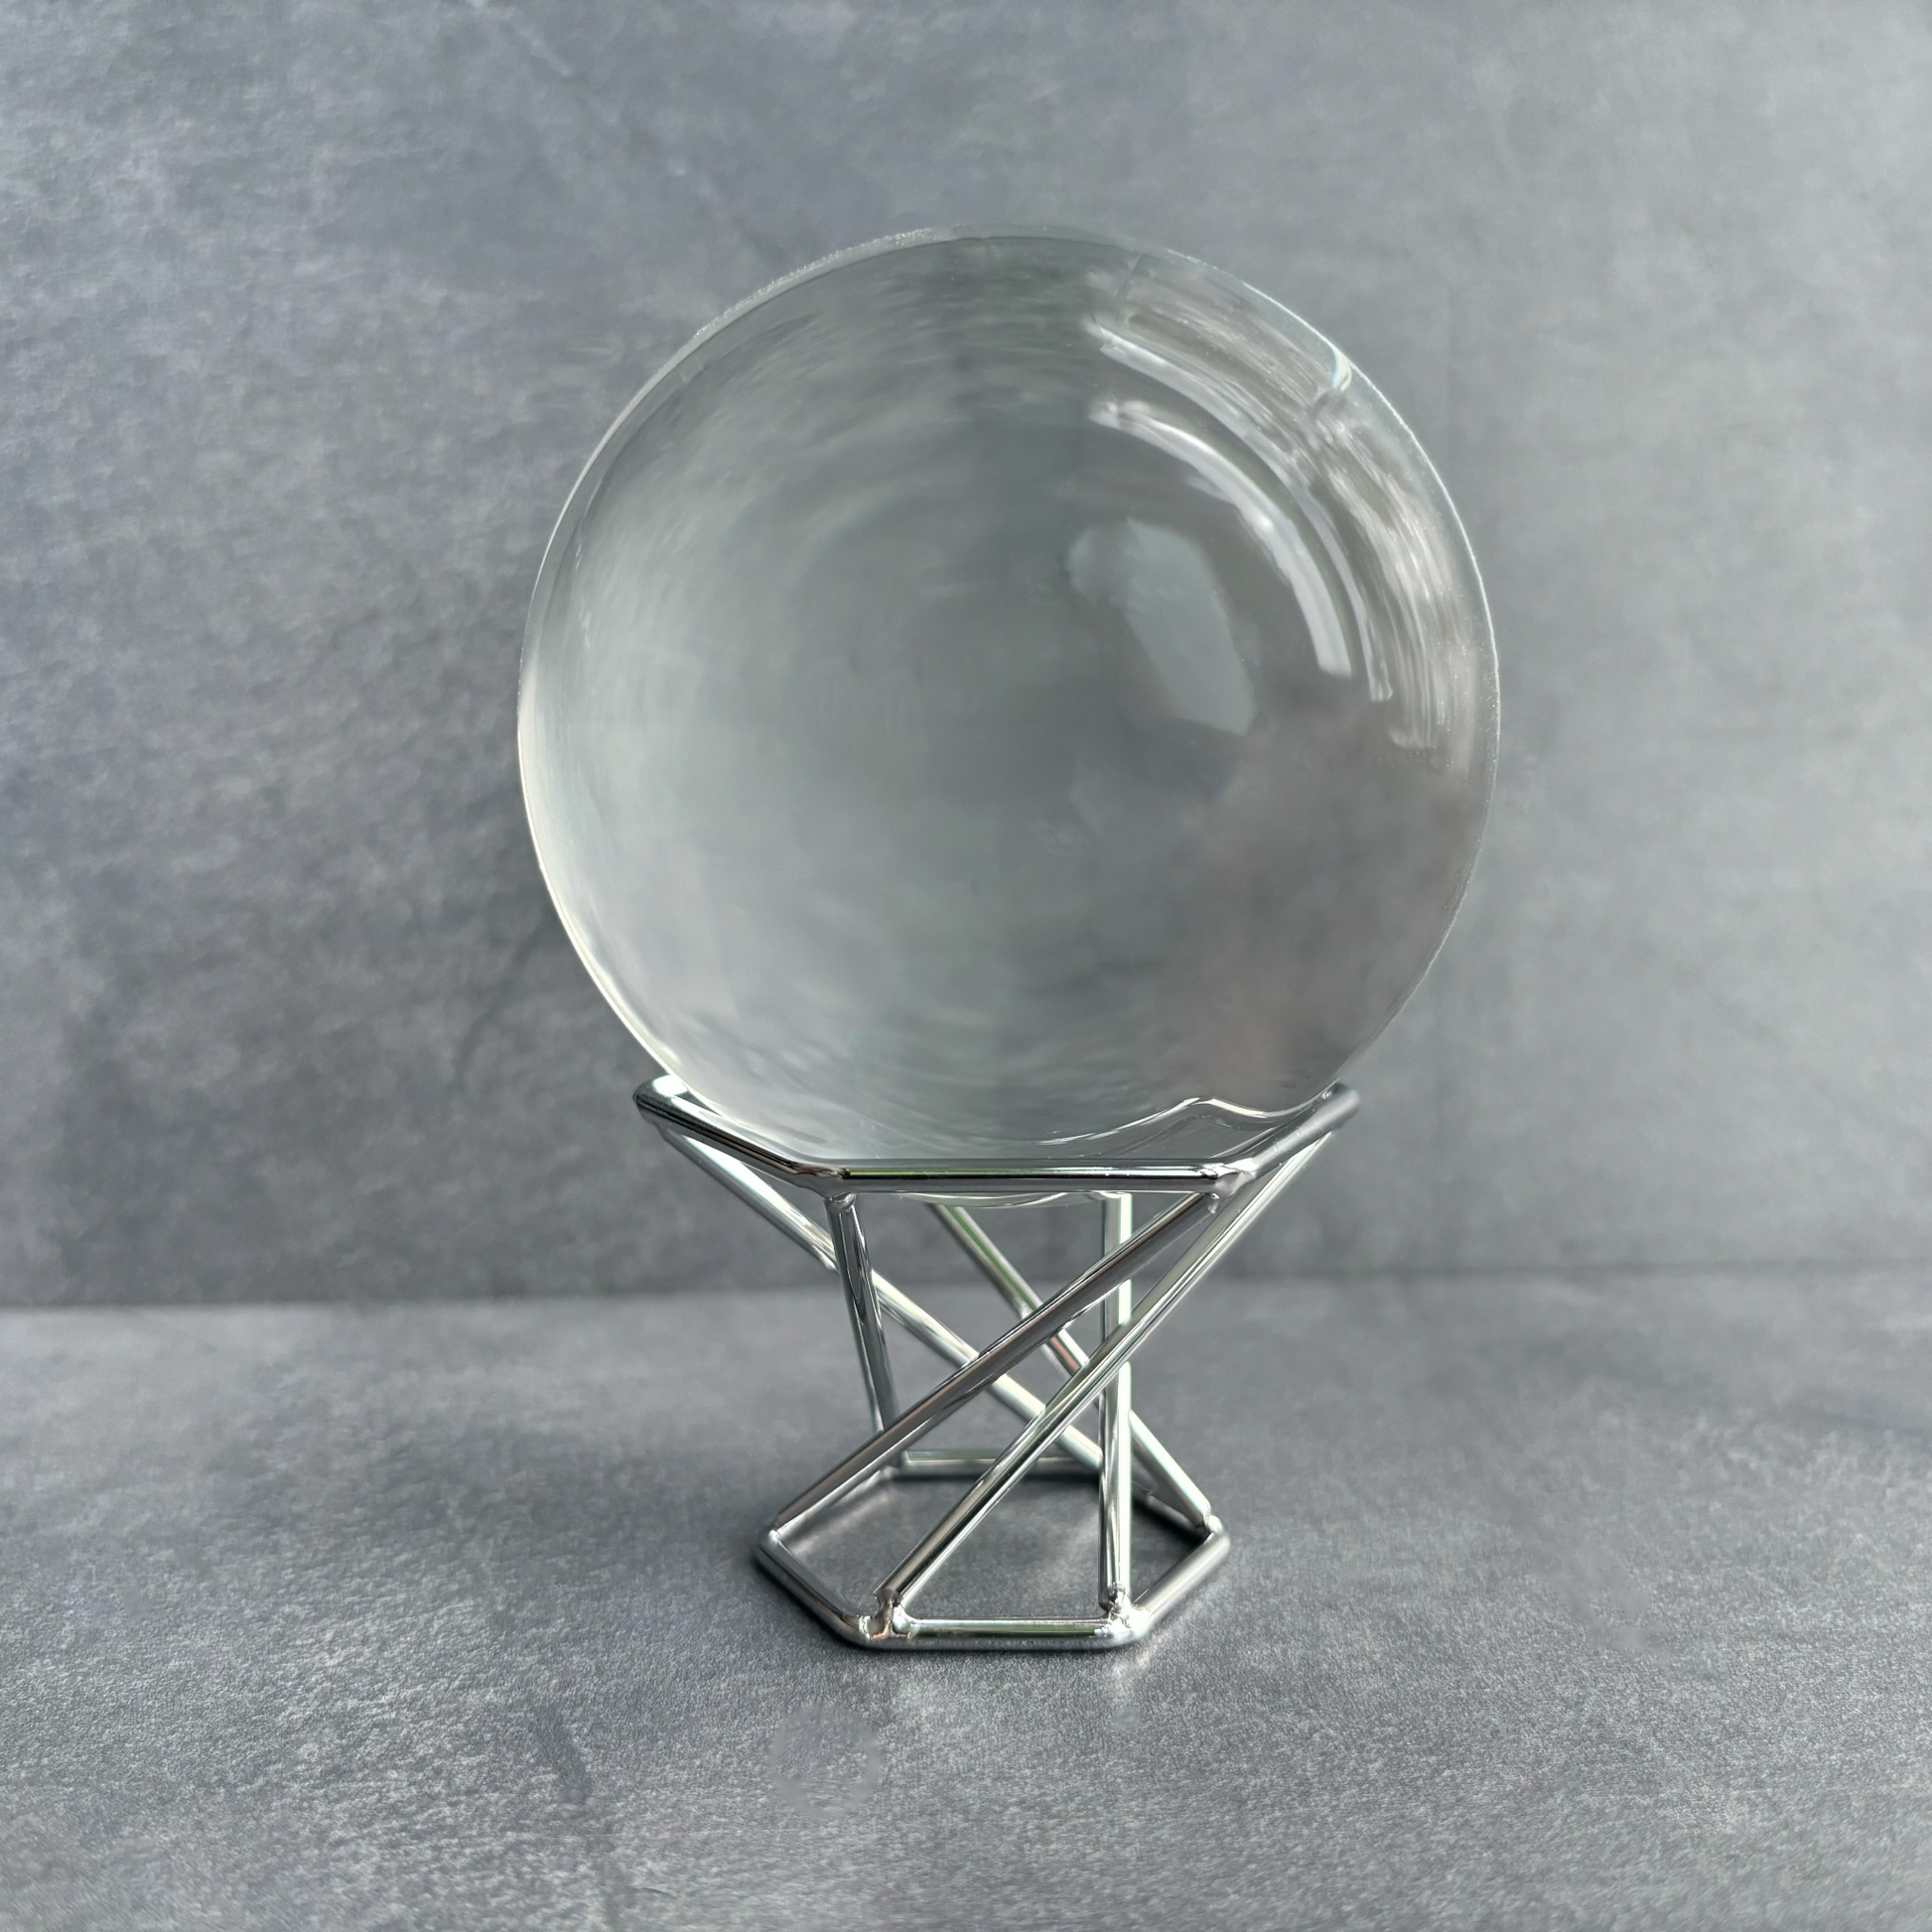 Silver Metal Geometric Crystal Sphere Display Stand